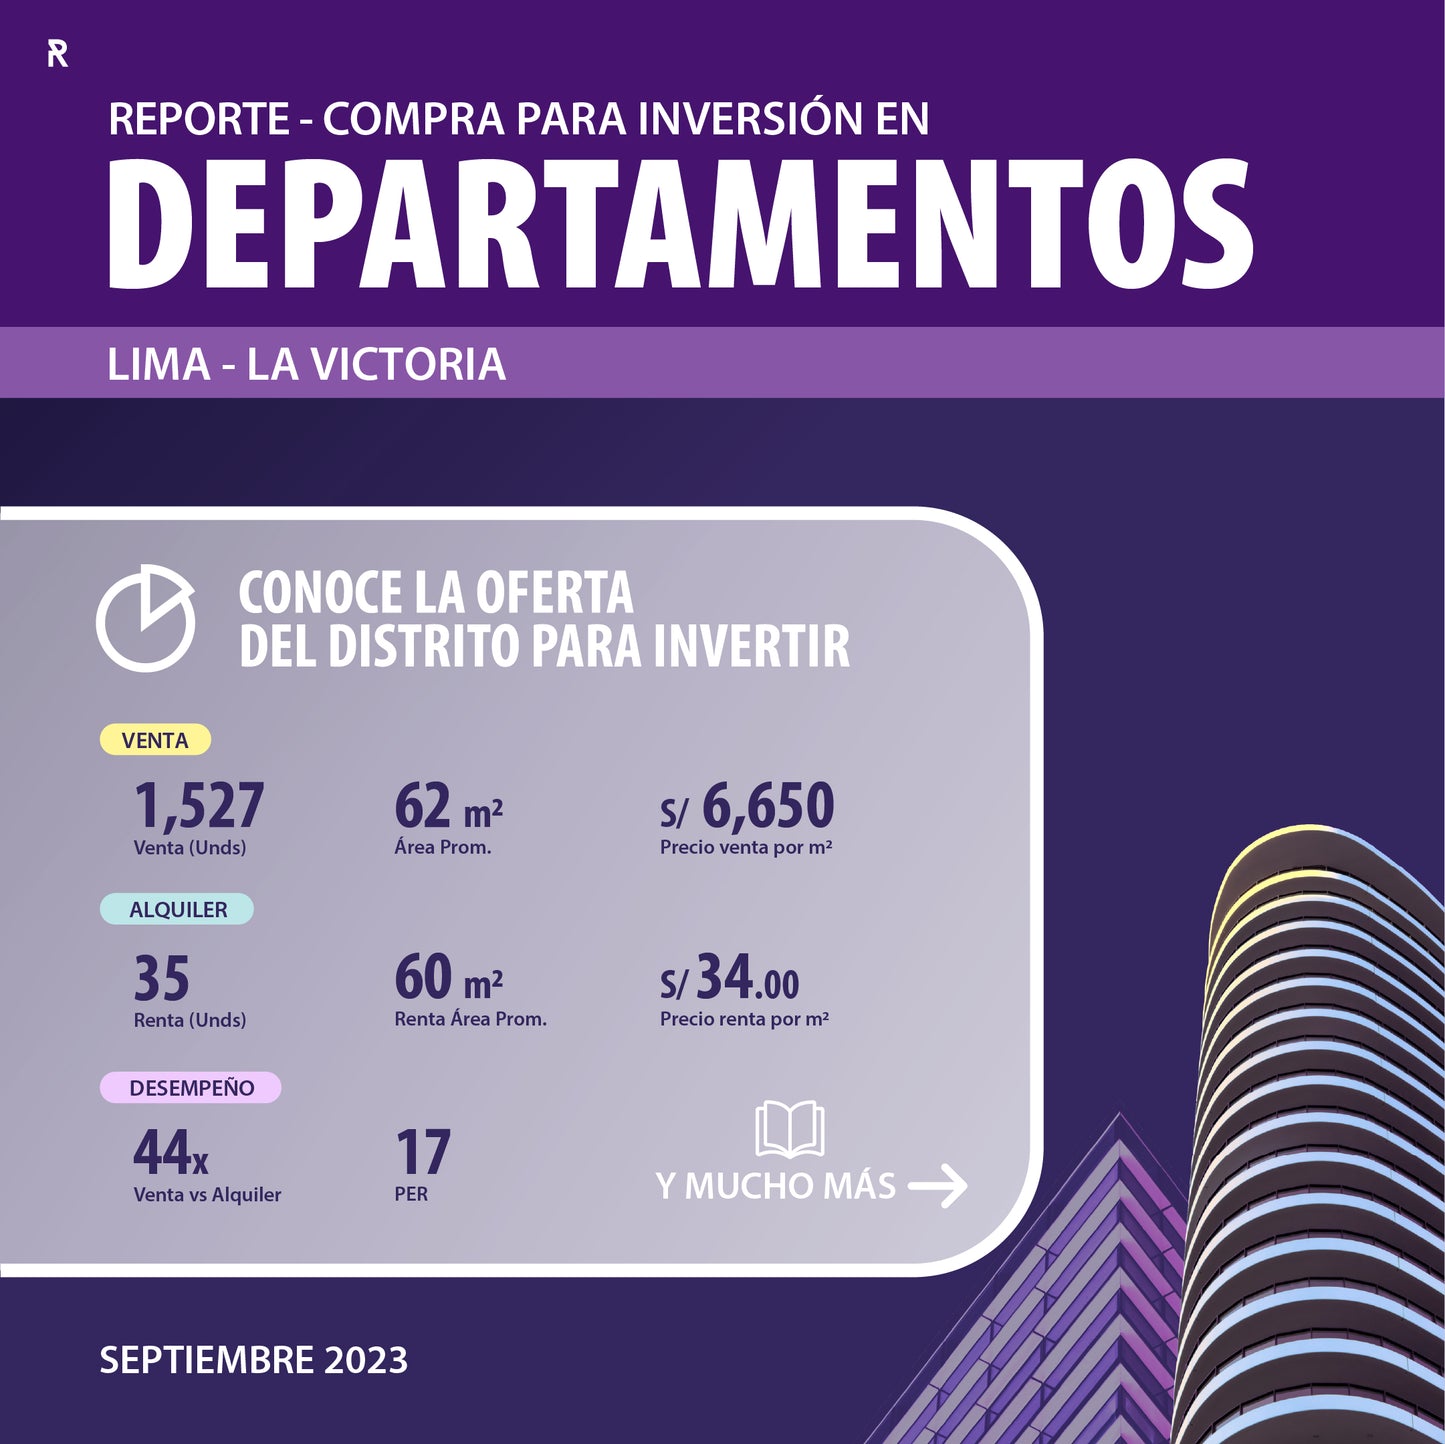 Inversión en Departamentos por Distrito - Septiembre 2023